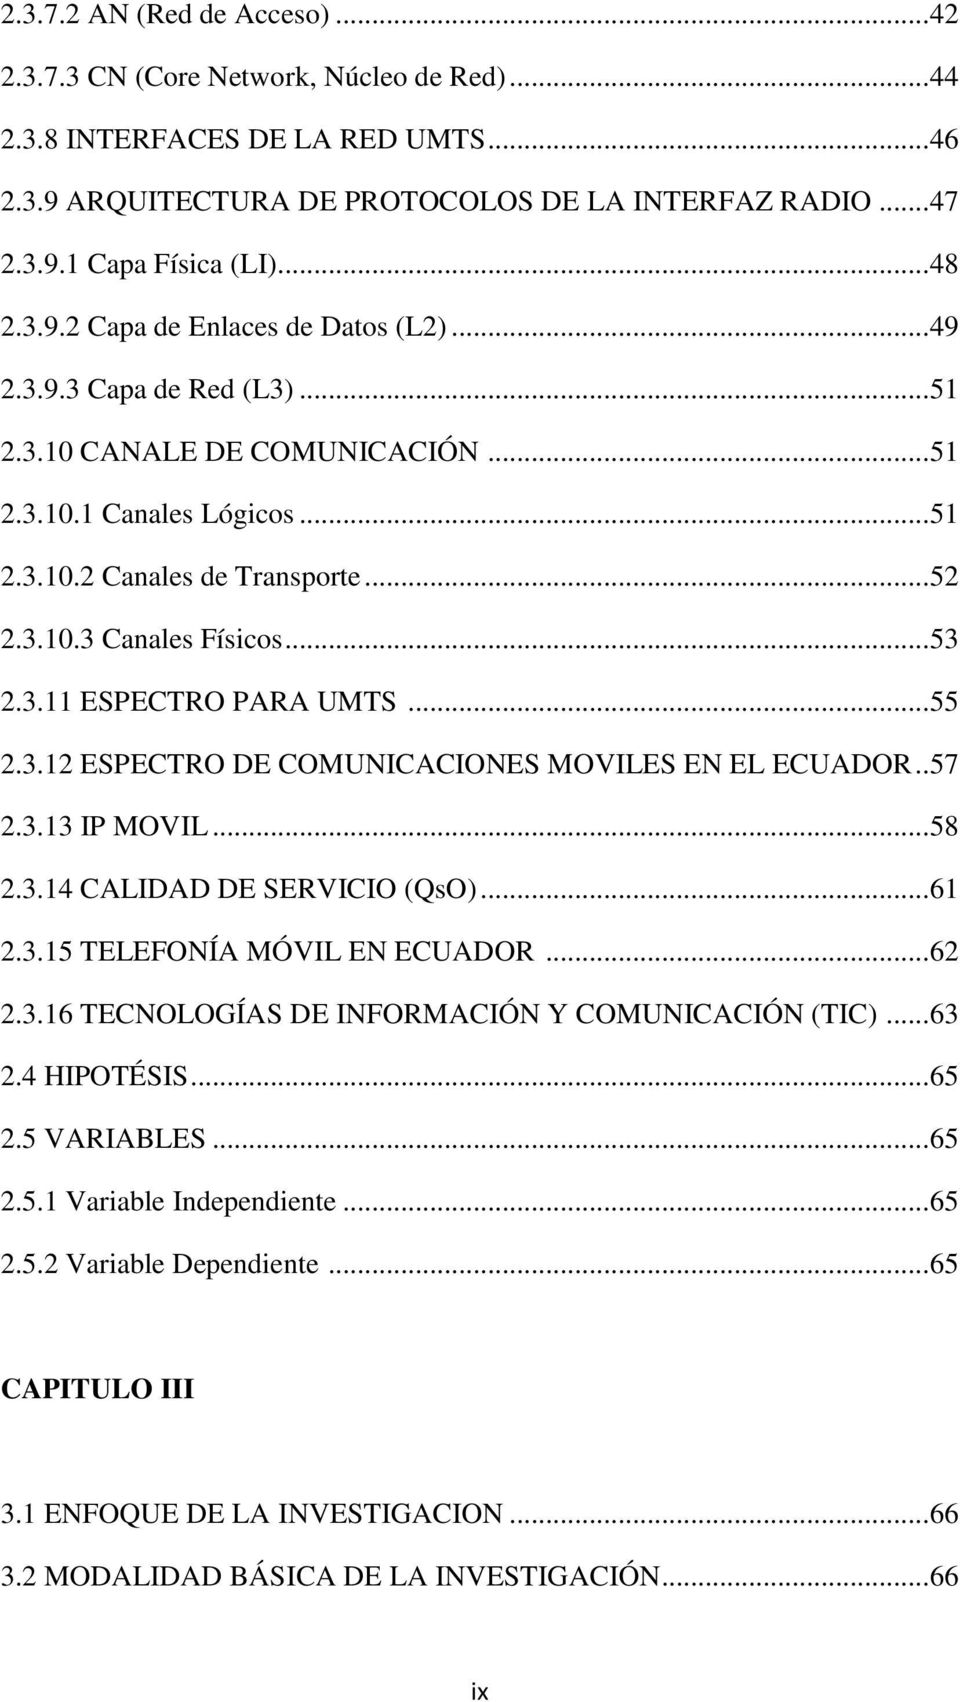 .. 53 2.3.11 ESPECTRO PARA UMTS... 55 2.3.12 ESPECTRO DE COMUNICACIONES MOVILES EN EL ECUADOR.. 57 2.3.13 IP MOVIL... 58 2.3.14 CALIDAD DE SERVICIO (QsO)... 61 2.3.15 TELEFONÍA MÓVIL EN ECUADOR... 62 2.